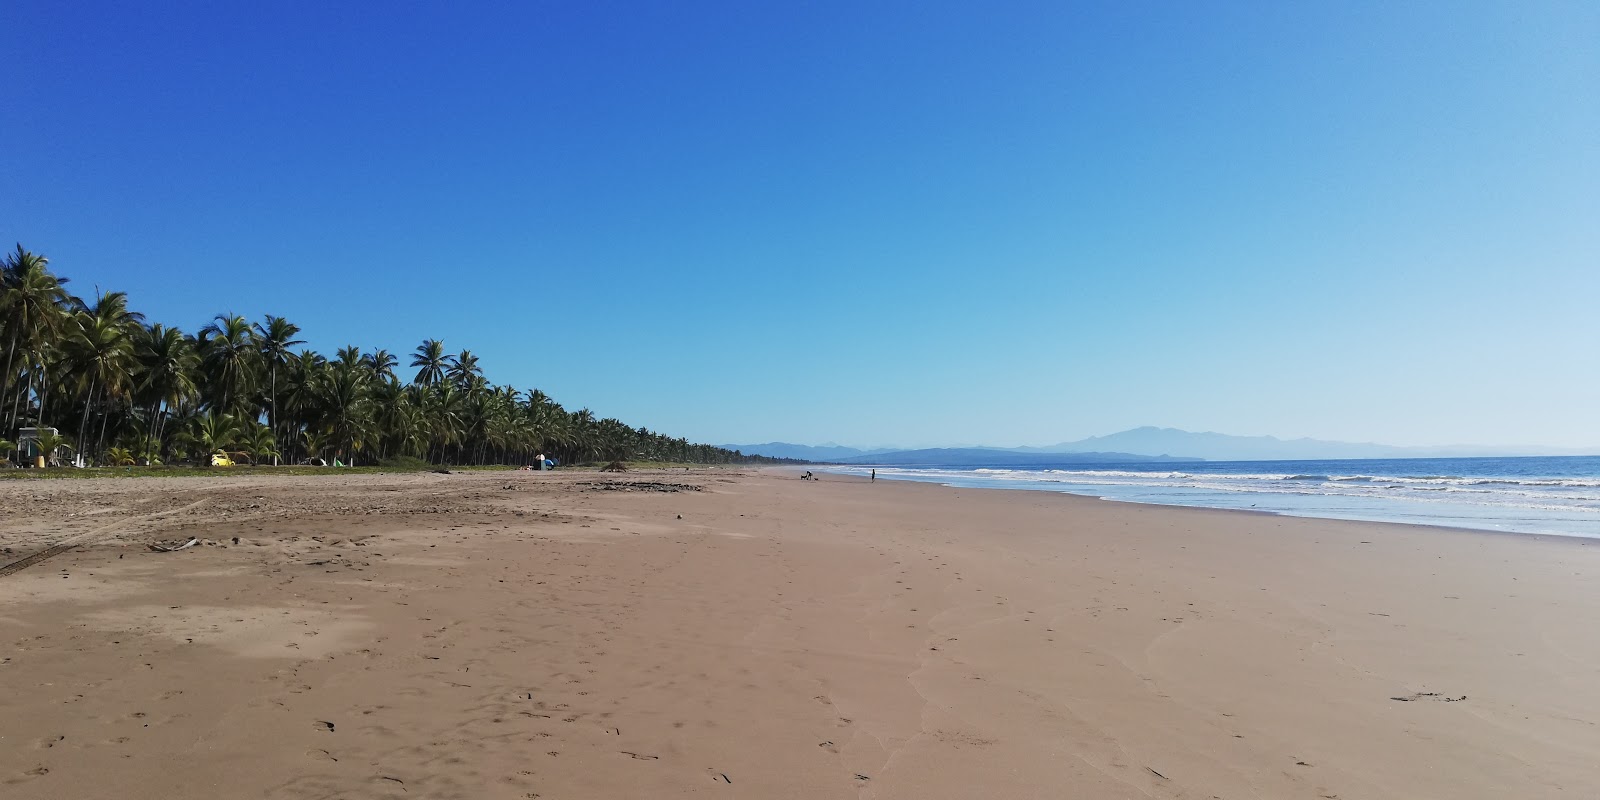 Chila beach的照片 具有部分干净级别的清洁度